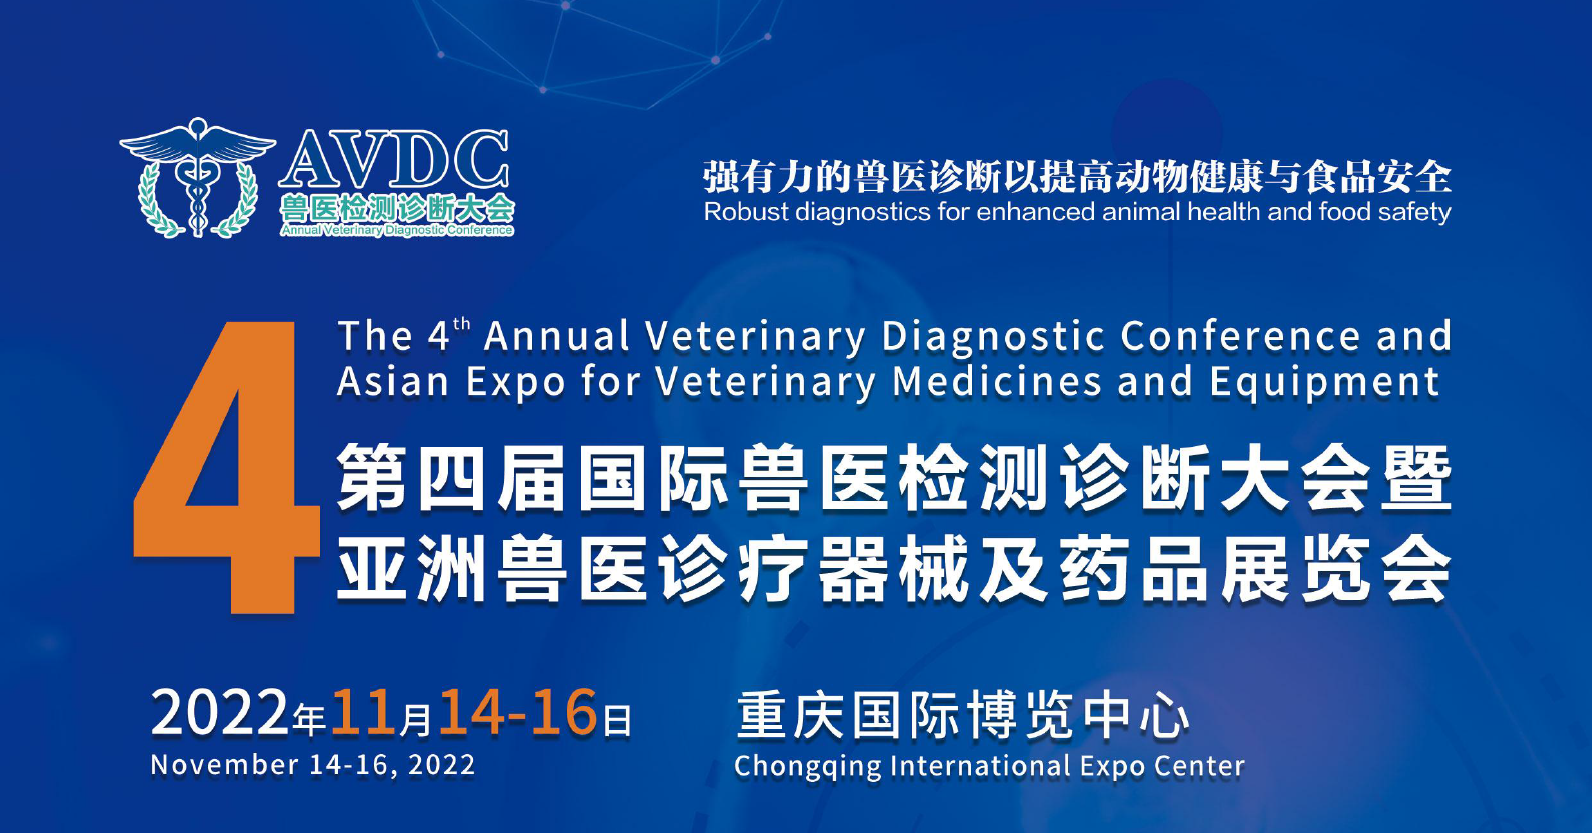 第四届国际兽医检测诊断大会暨亚洲兽医诊疗器械及药品展览会将于11月14-16日举行